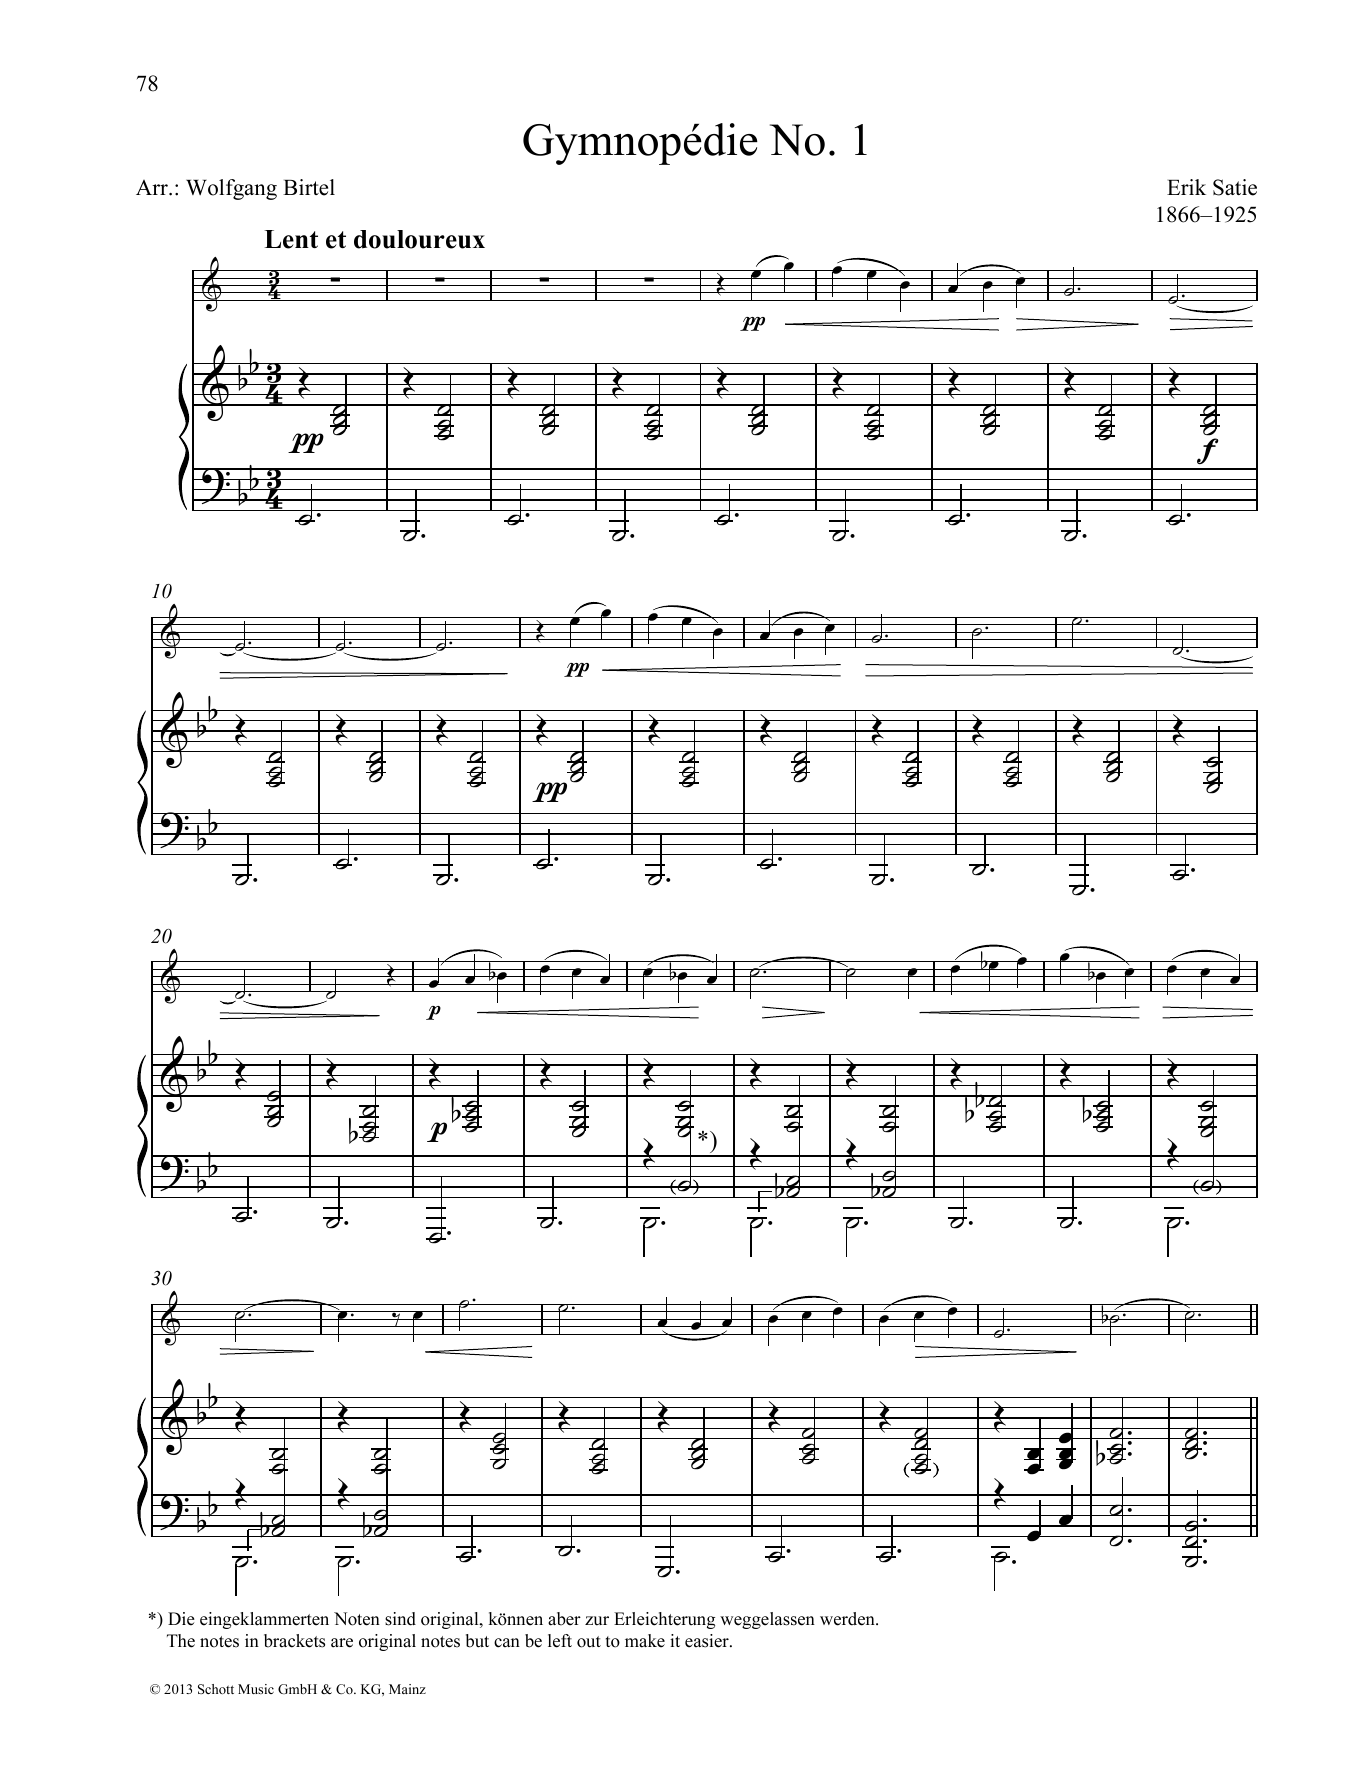 Download Erik Satie Gymnopédie No. 1 Sheet Music